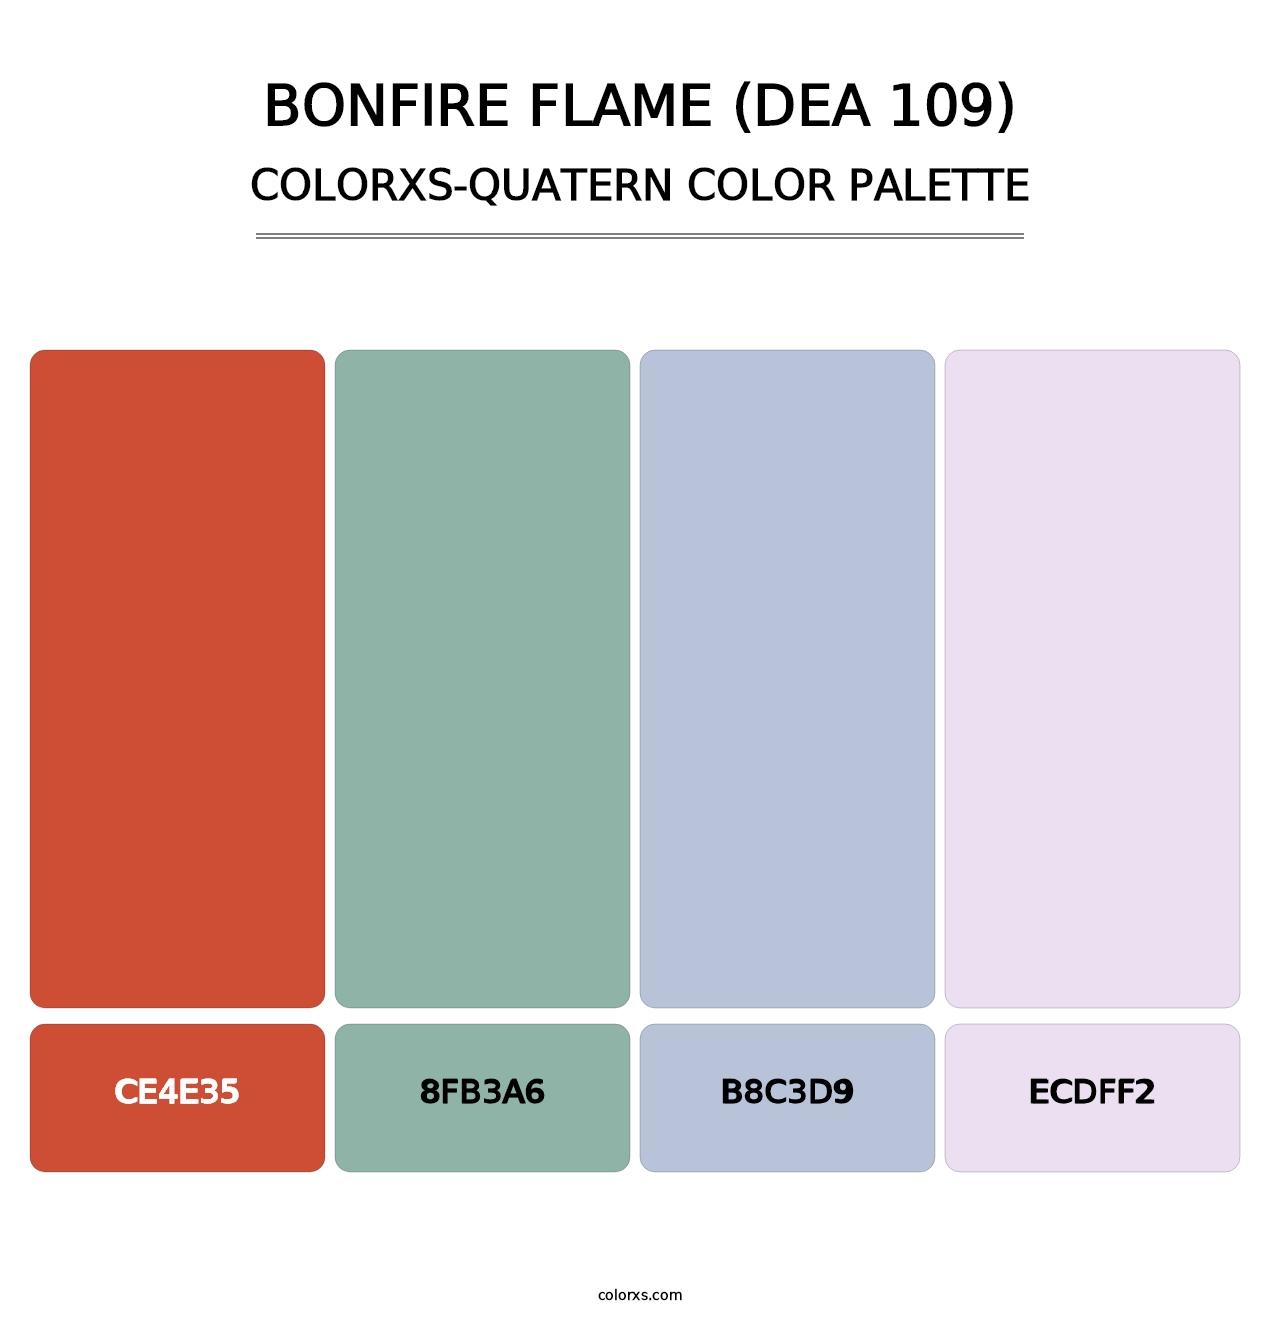 Bonfire Flame (DEA 109) - Colorxs Quatern Palette